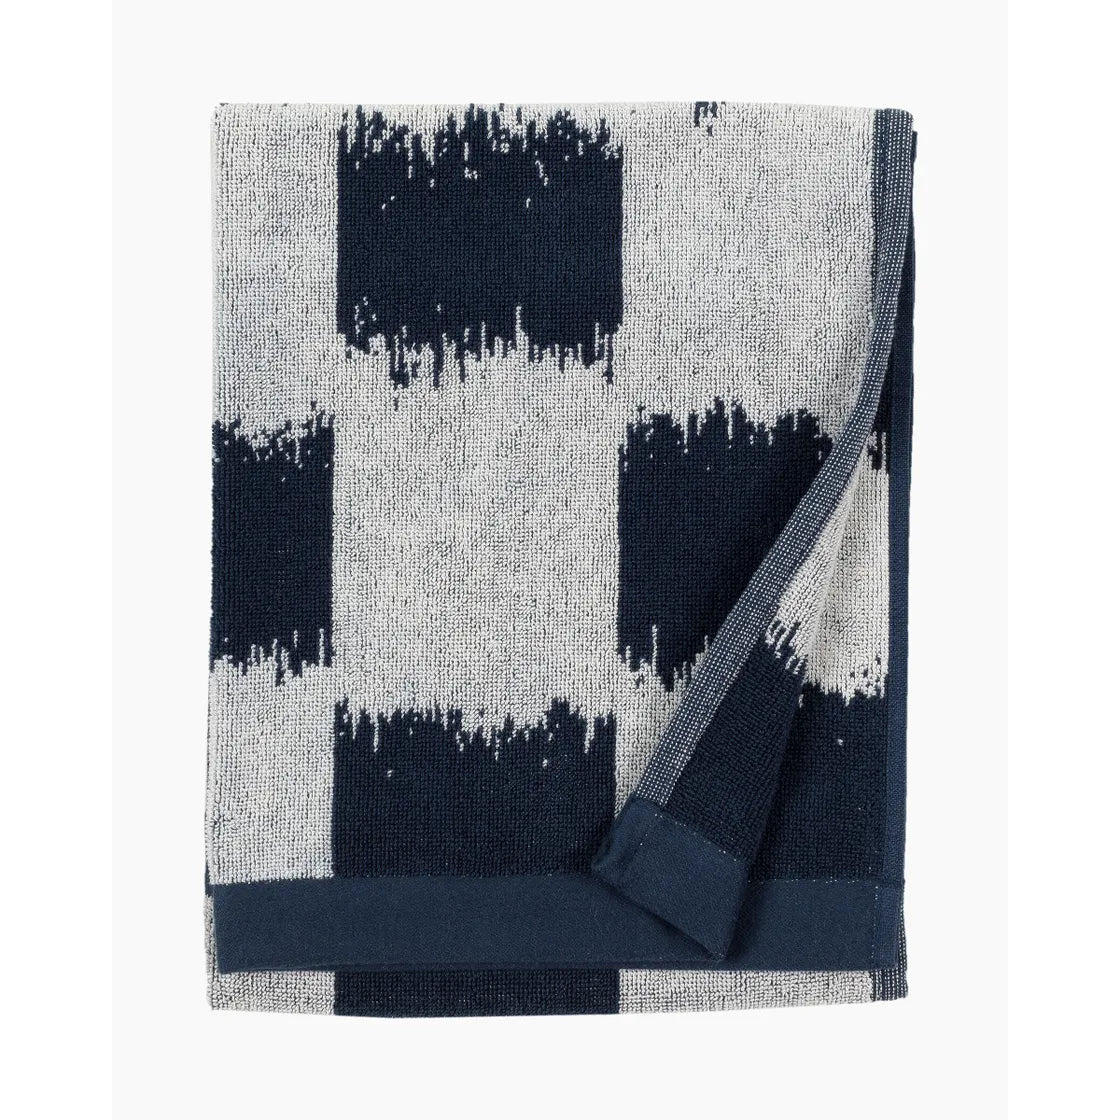 Ostjakki hand towel 50x70 cm dark blue / off white 070724 850